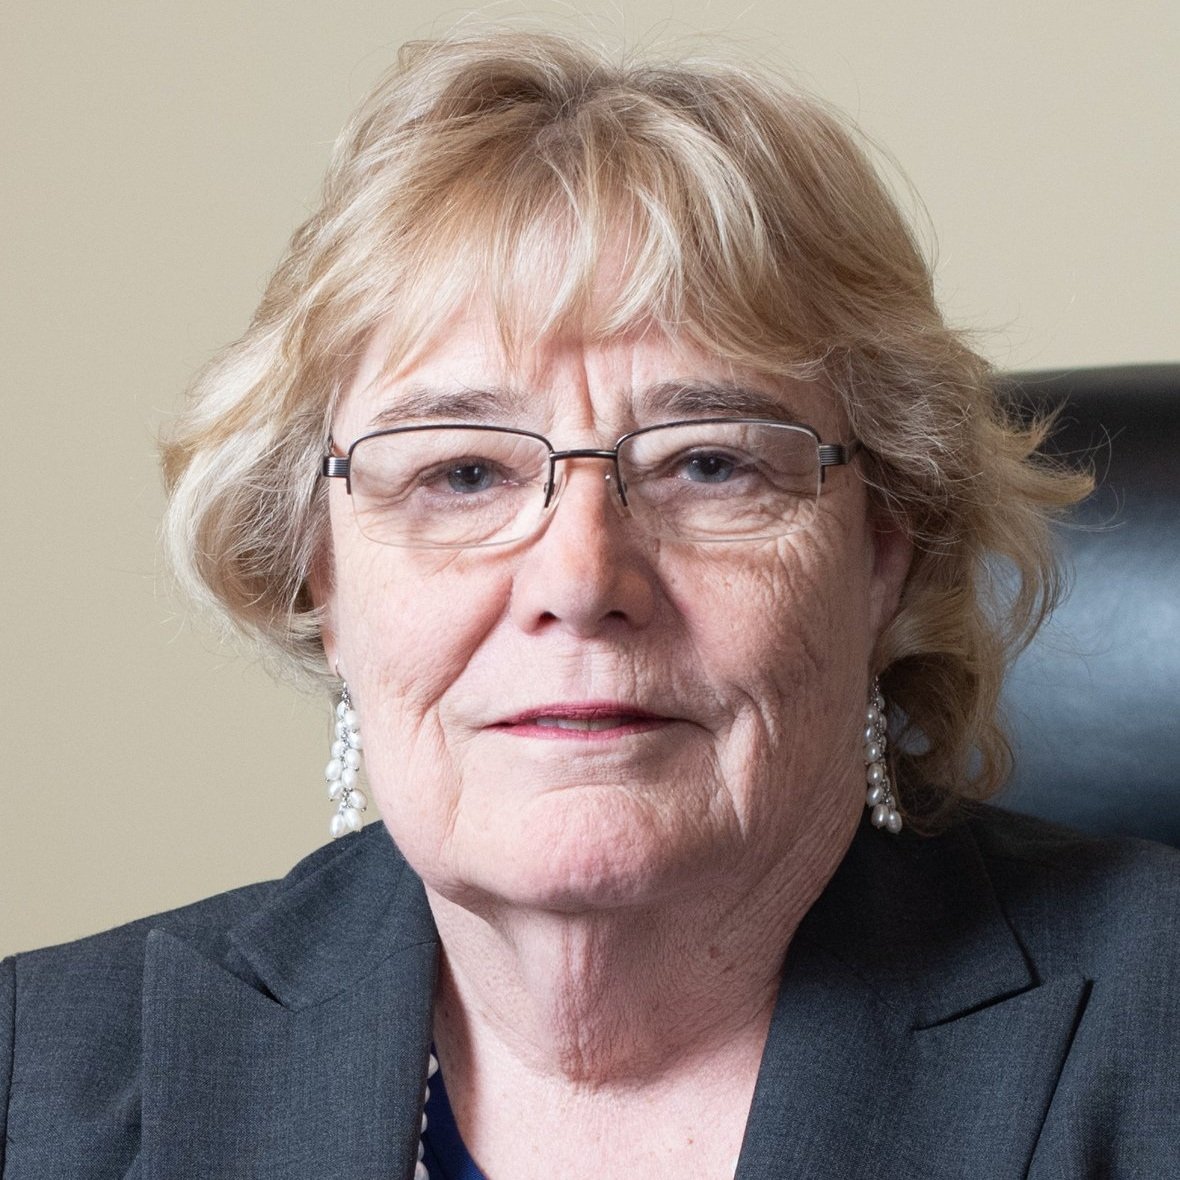 Representative Zoe Lofgren, 19th Congressional District